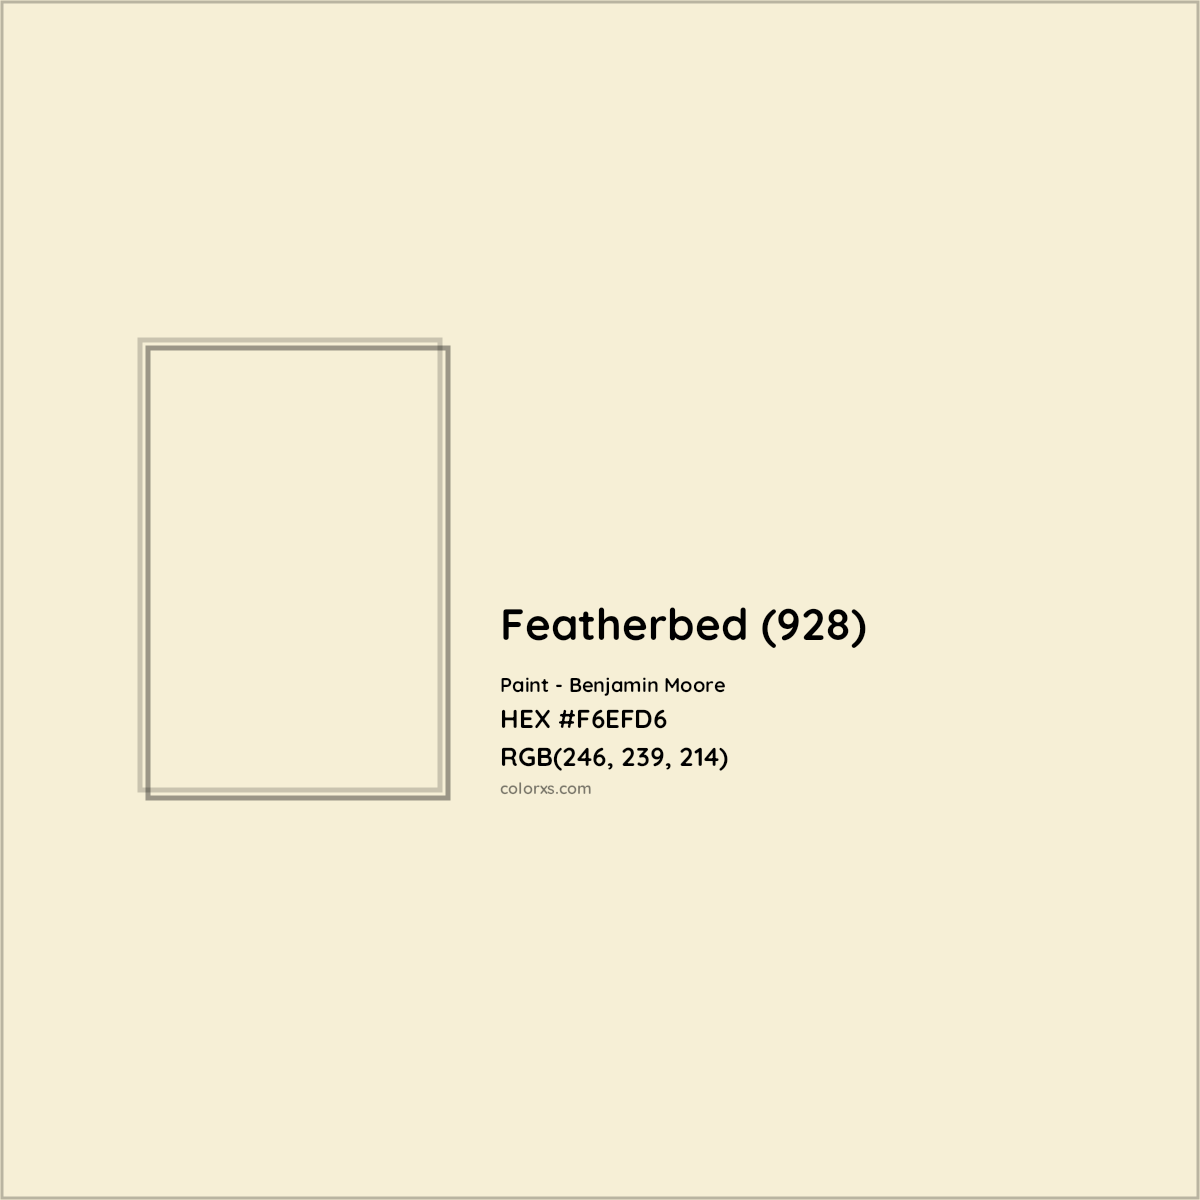 HEX #F6EFD6 Featherbed (928) Paint Benjamin Moore - Color Code